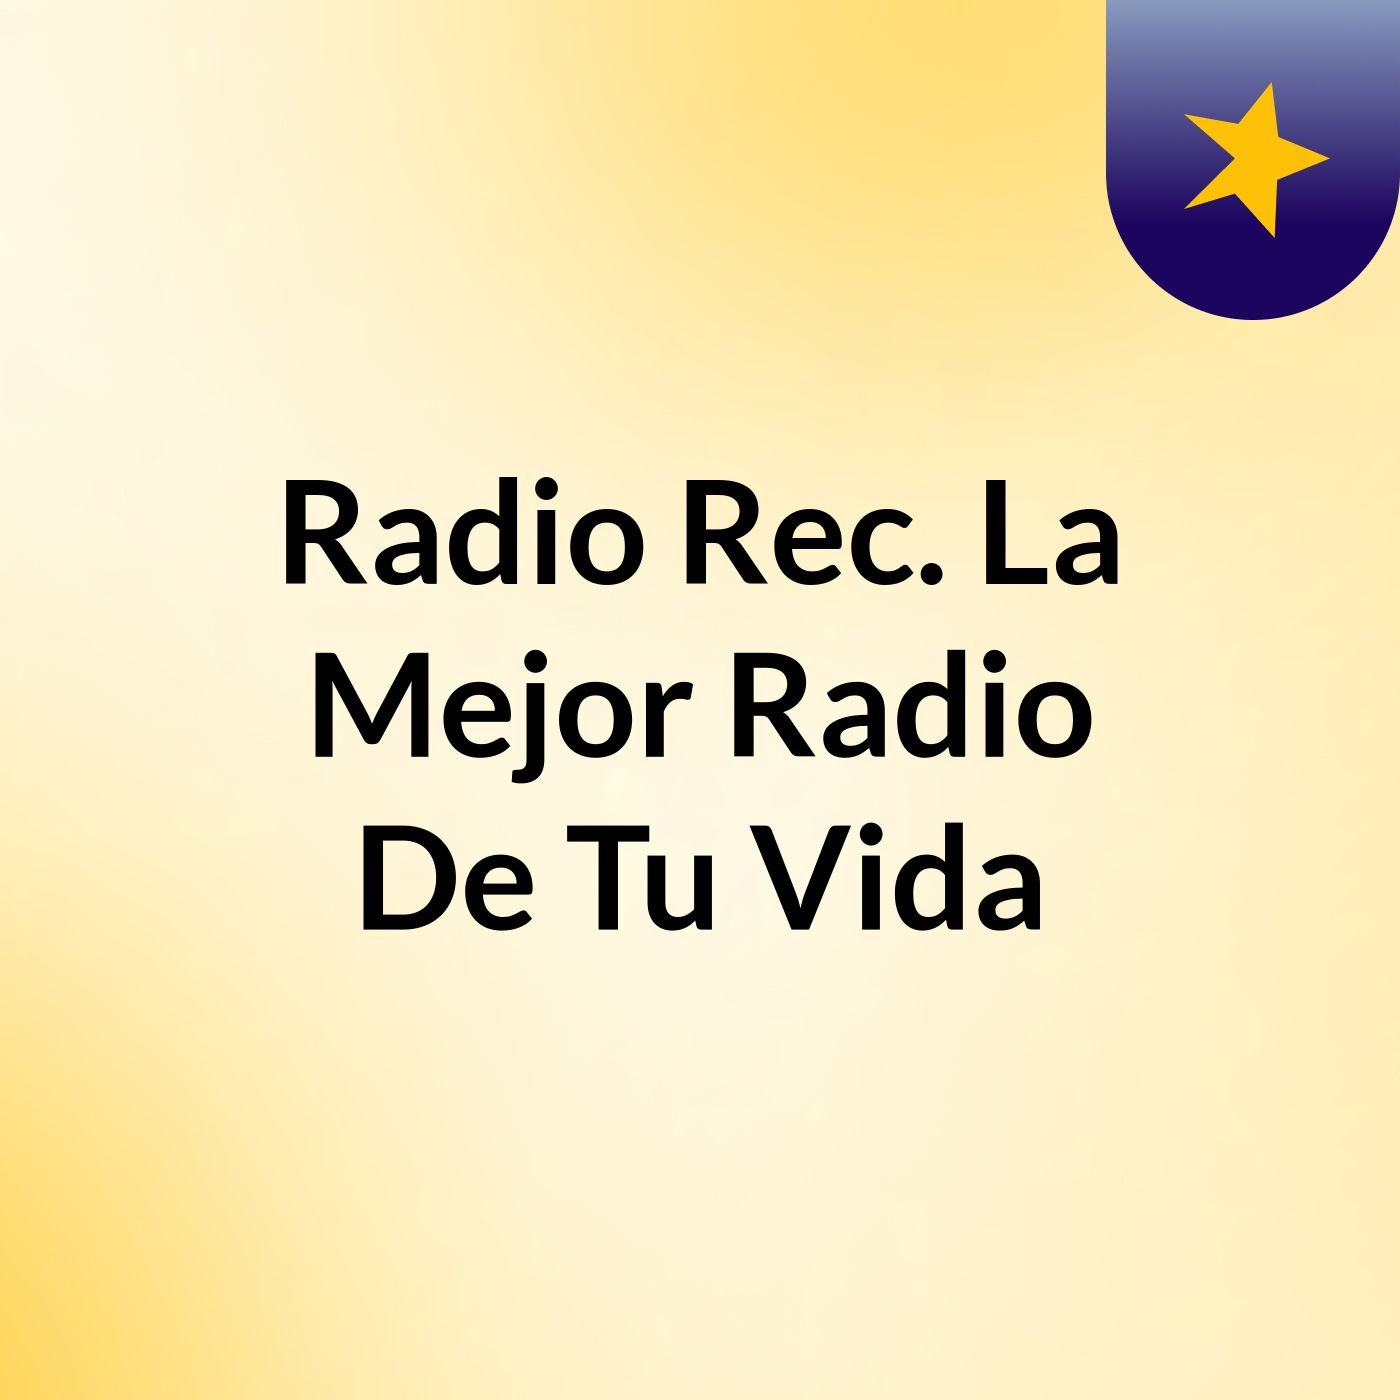 Radio Rec. La Mejor Radio De Tu Vida